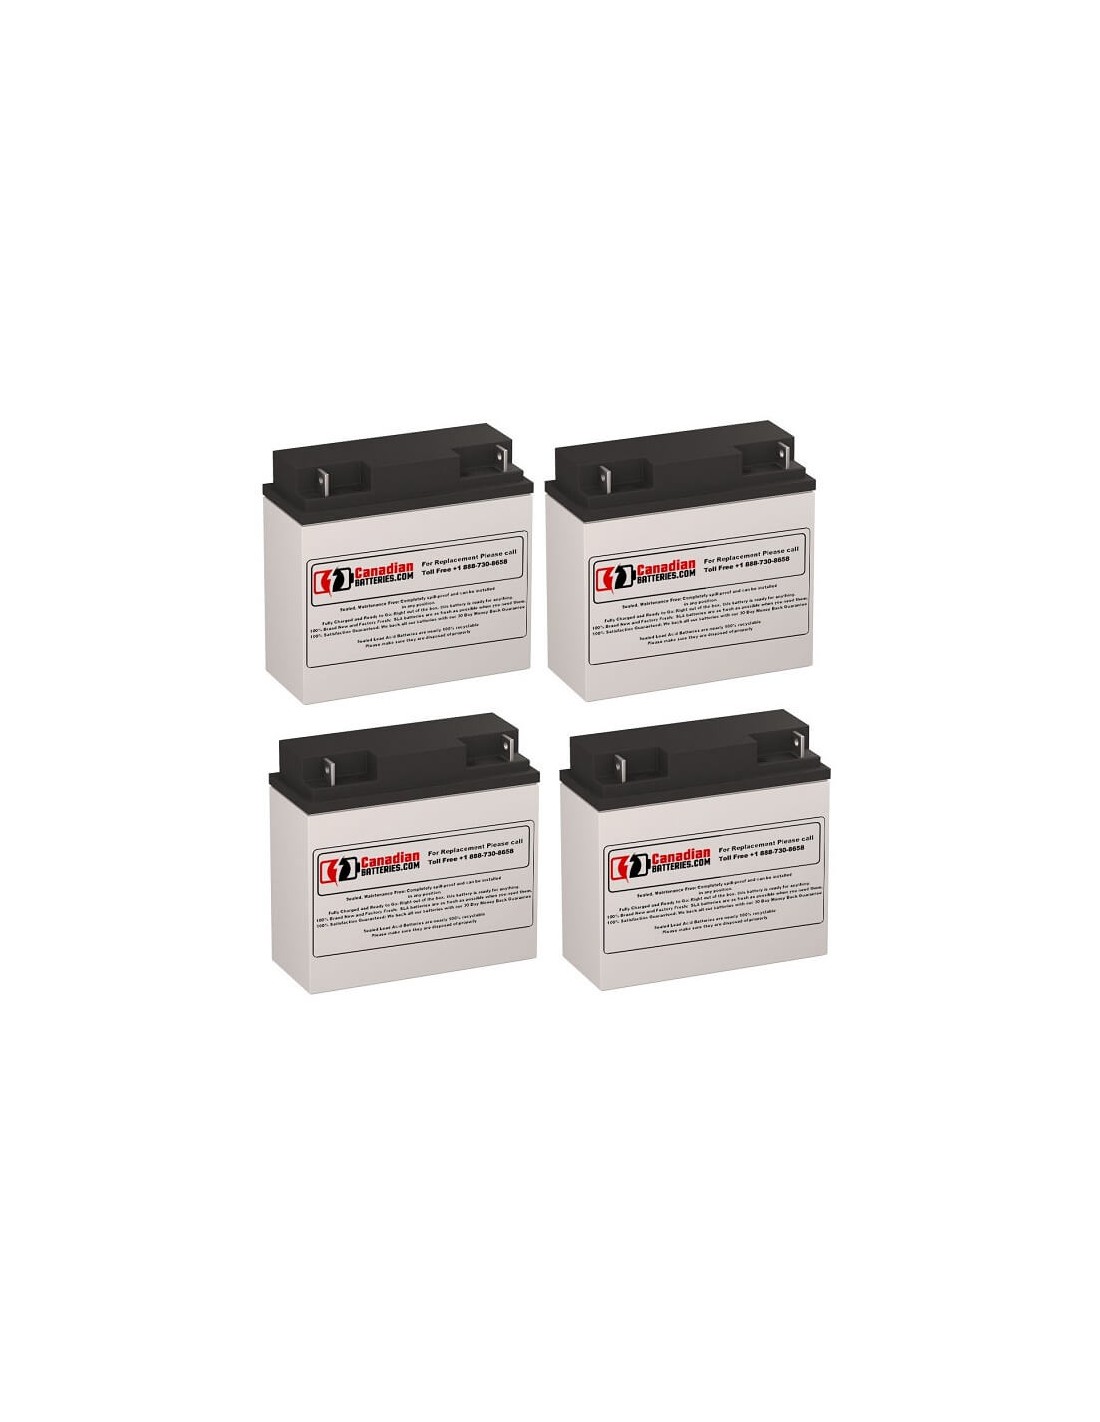 Batteries for Deltec Pra 2000 UPS, 4 x 12V, 18Ah - 216Wh